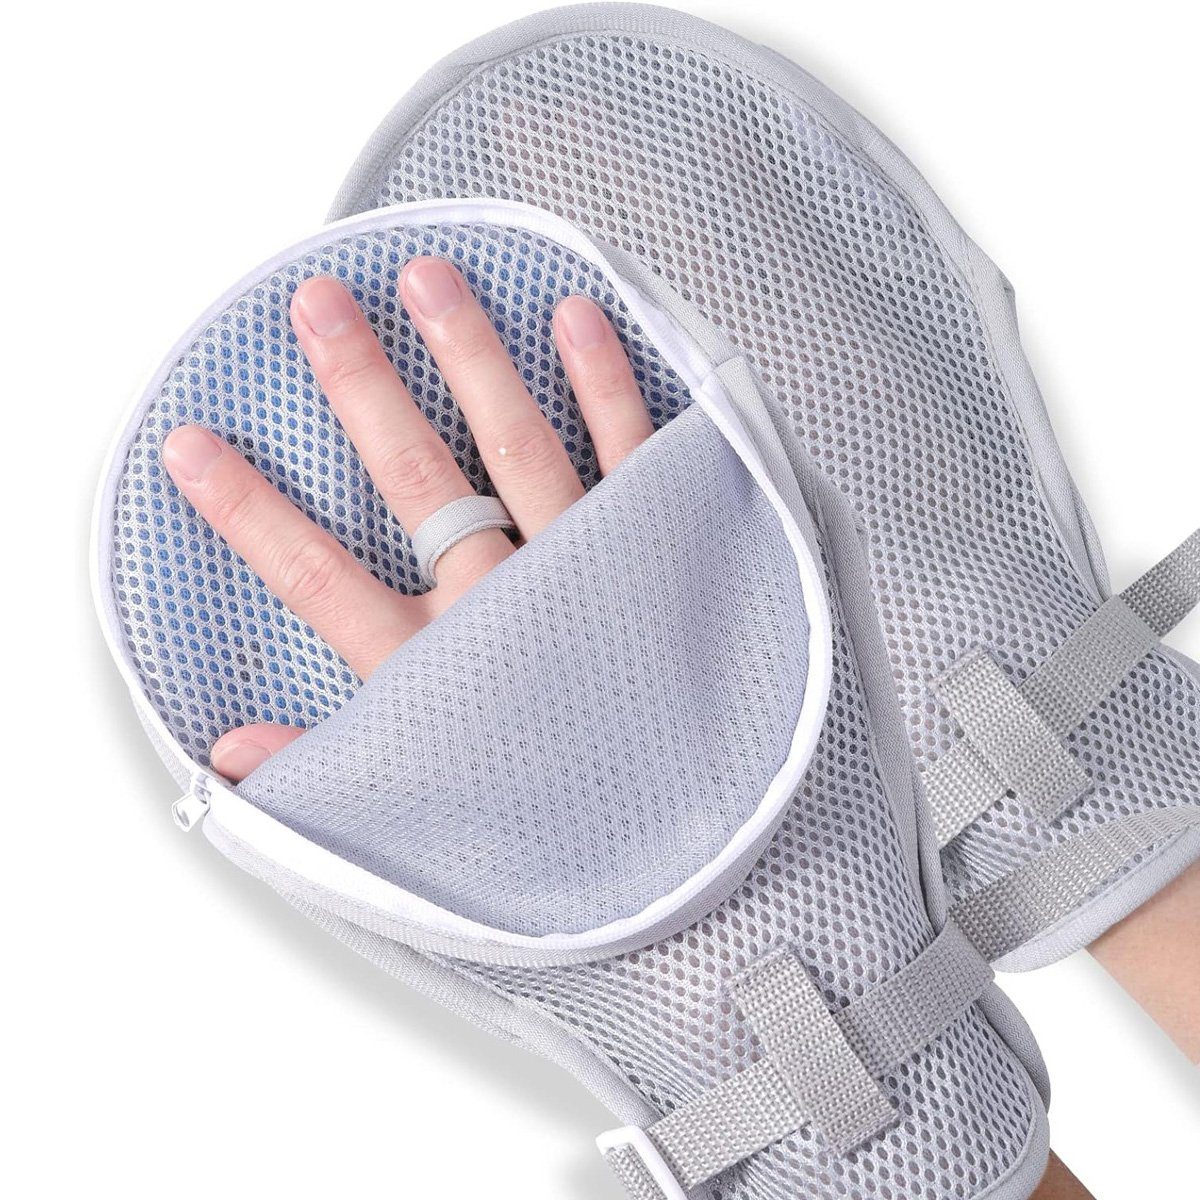 yozhiqu Fäustlinge Band für eingeschränkte Handbewegung, medizinische Handschuhe -2er-Set Handschutzhandschuhe für Menschen mit Demenz oder autistische Kinder